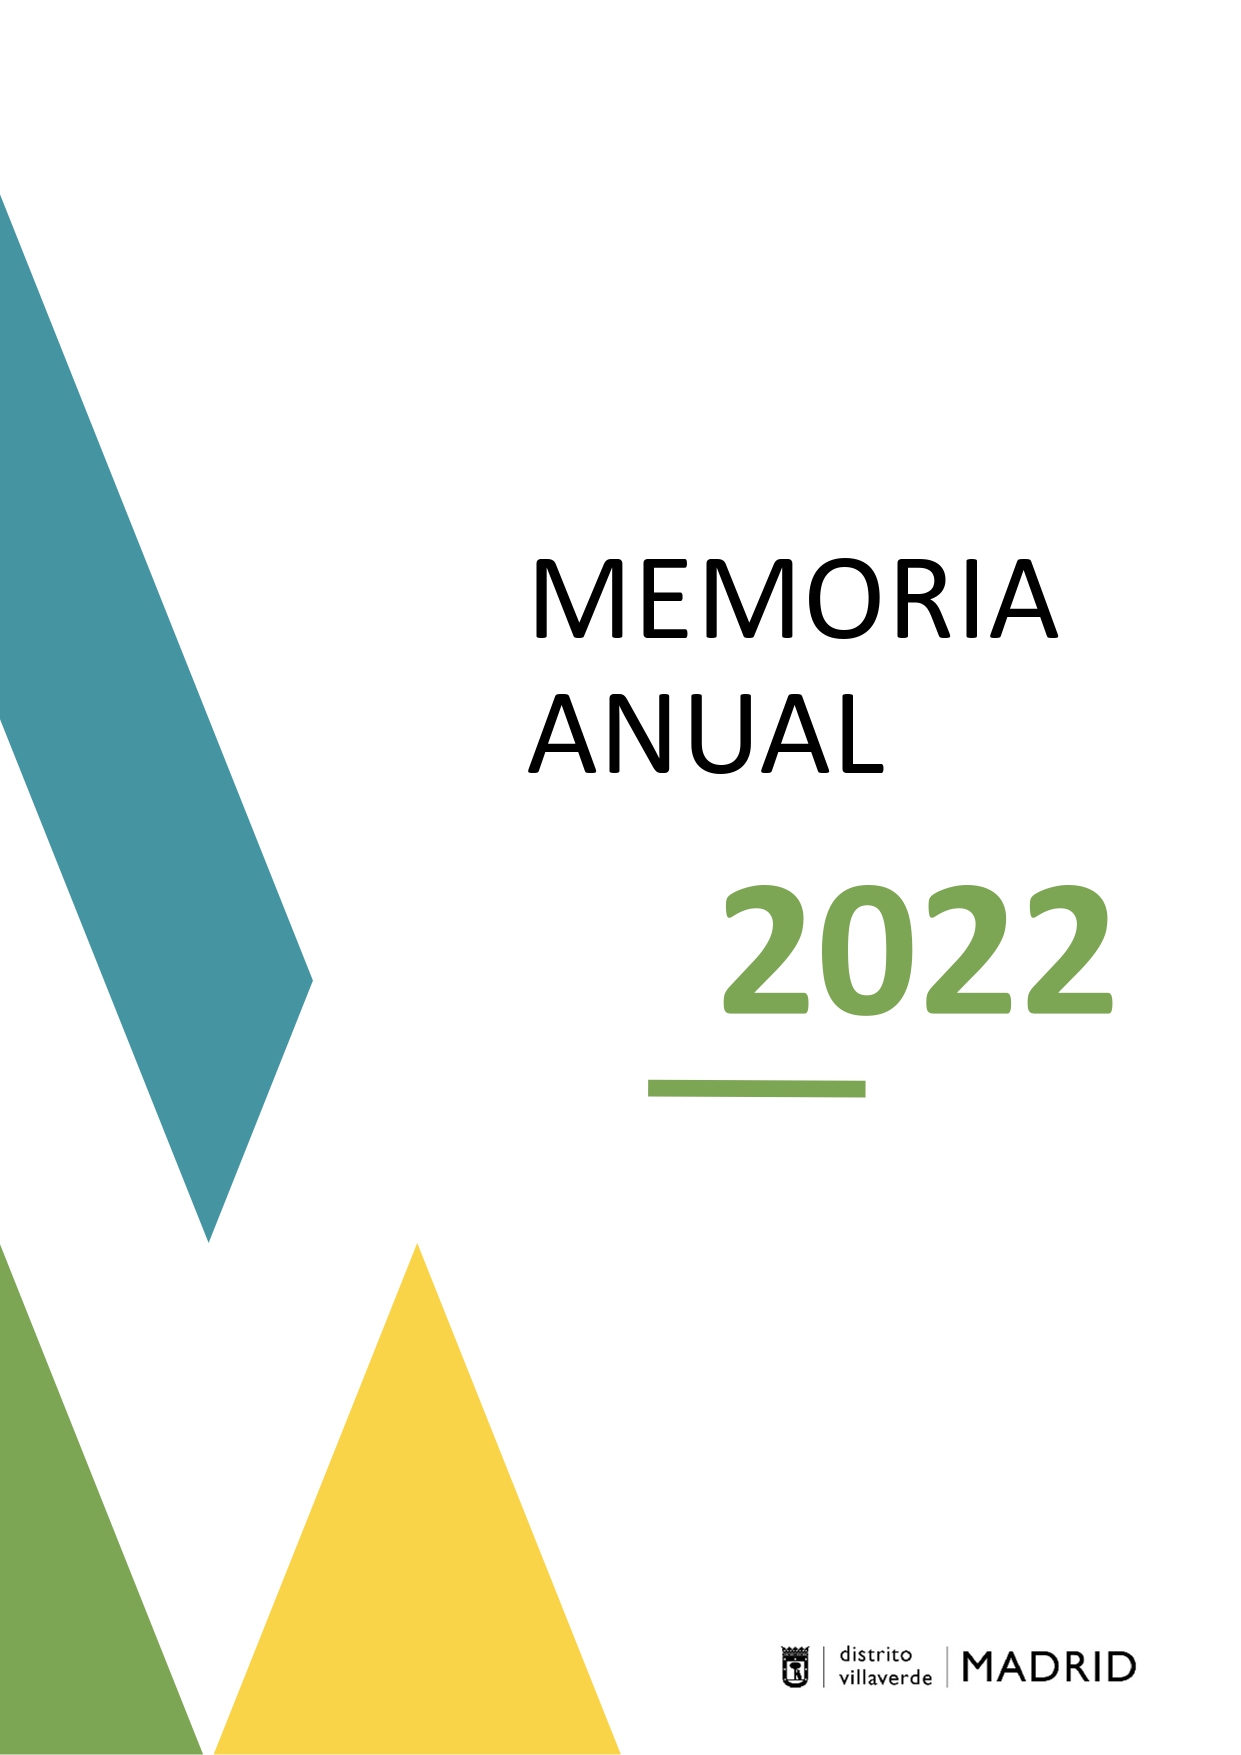 Memoria 2022 del distrito de Villaverde